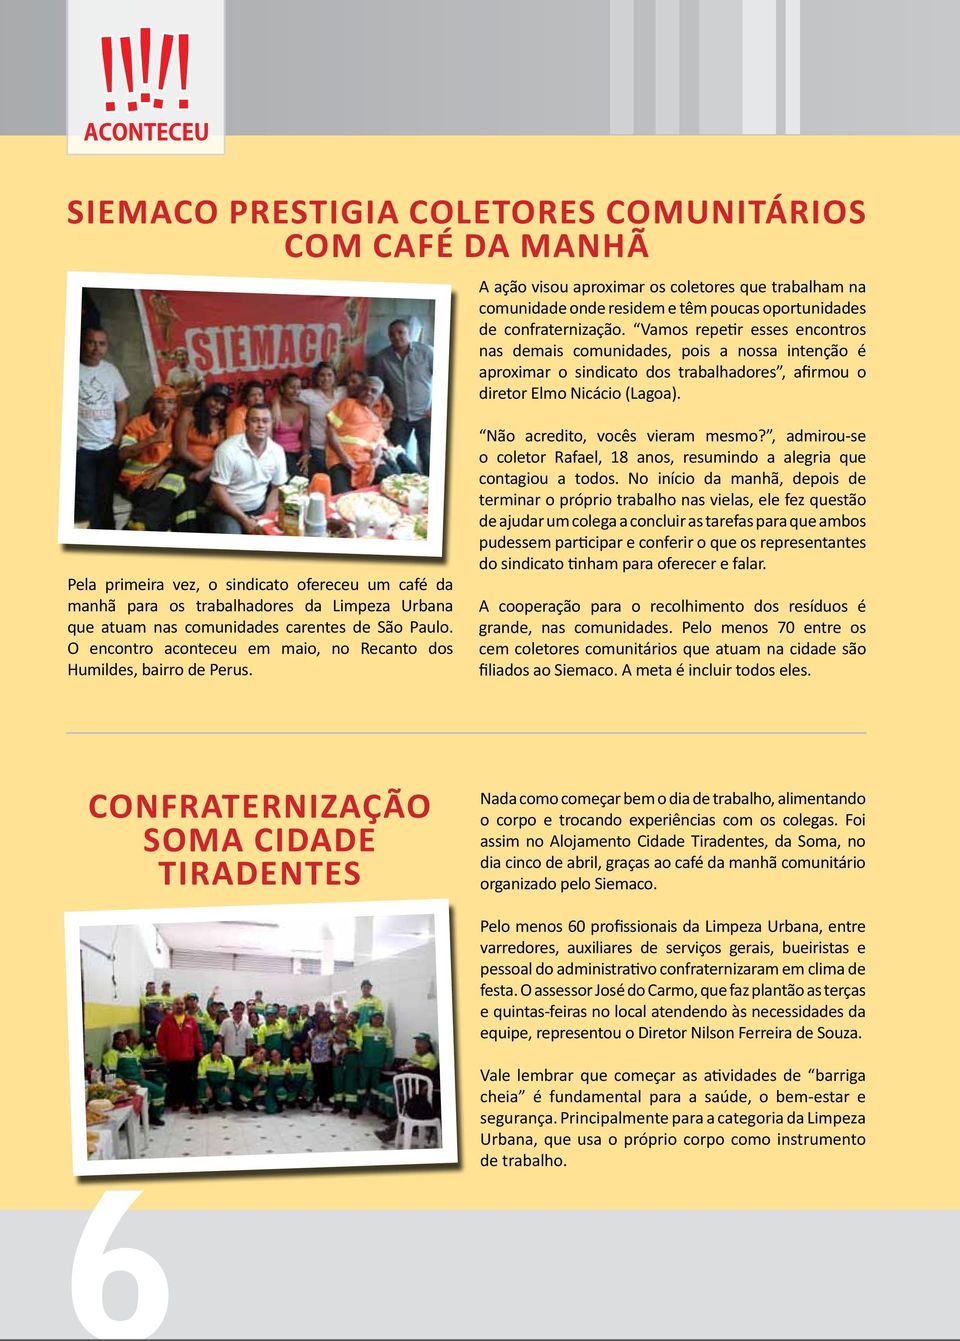 Pela primeira vez, o sindicato ofereceu um café da manhã para os trabalhadores da Limpeza Urbana que atuam nas comunidades carentes de São Paulo.